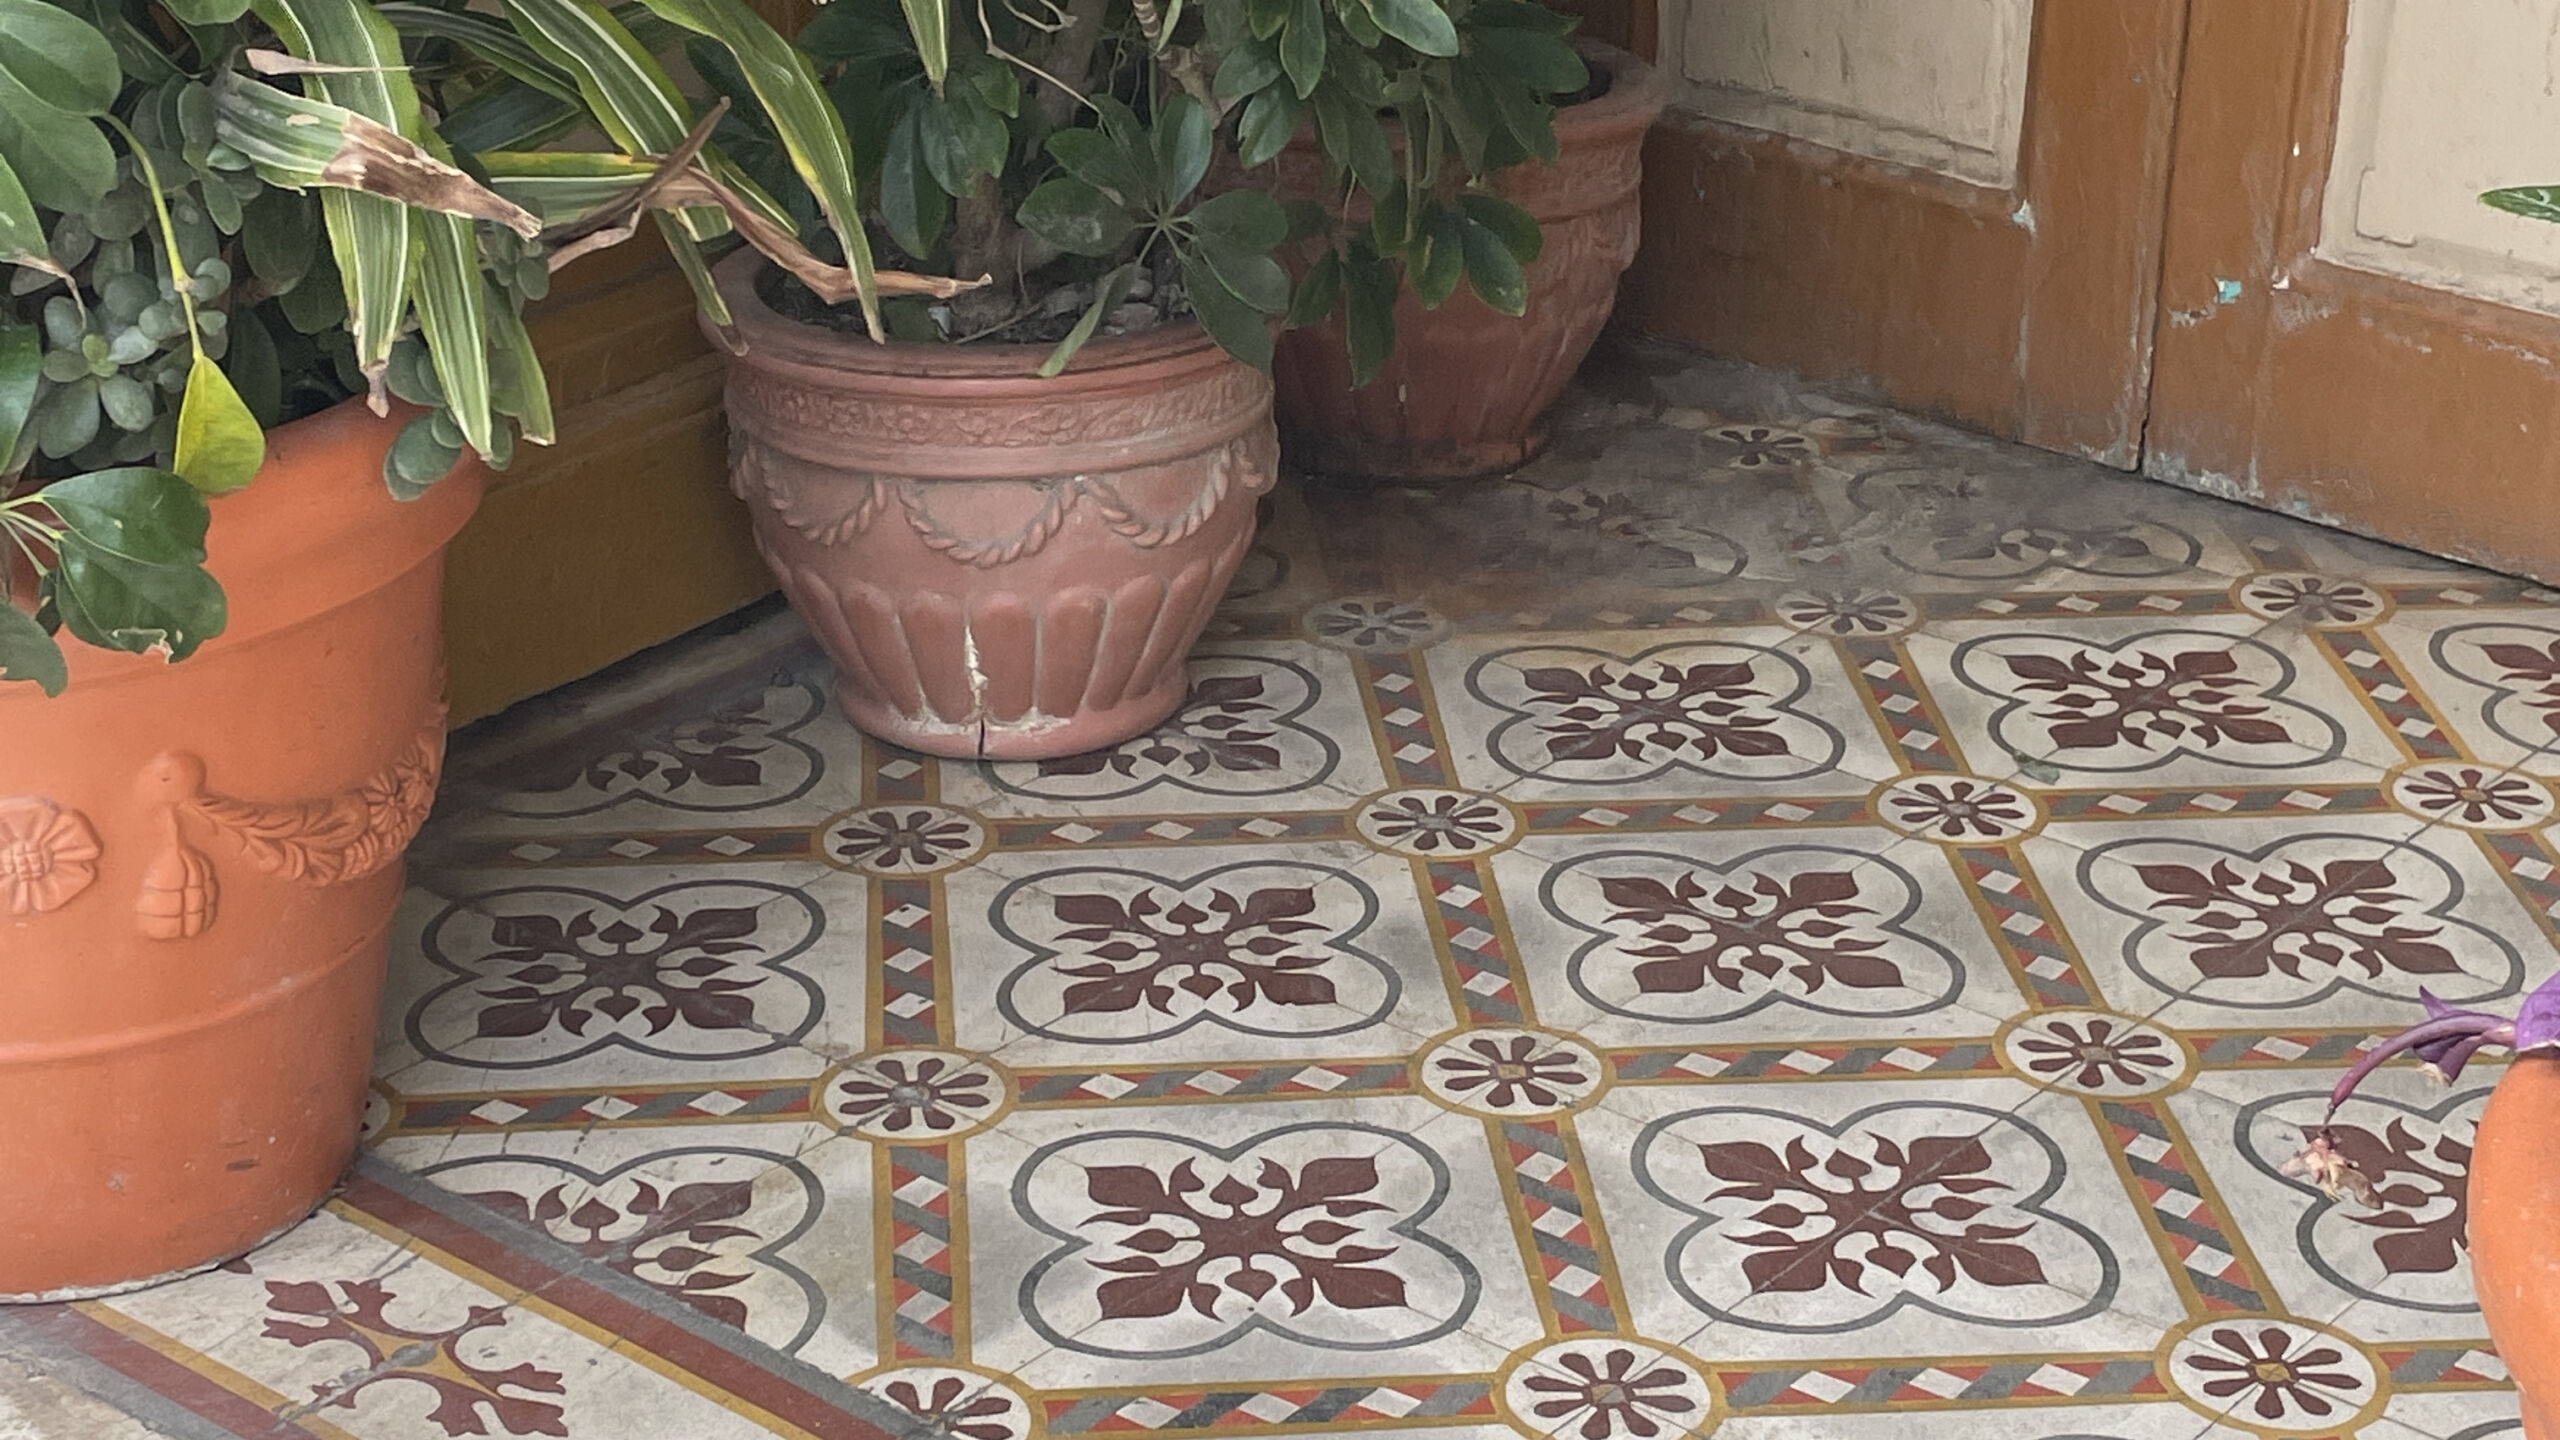 Zementfliesen wurden schon langein Marokko eingesetzt und sind ein Teil der Marokkanischen Kultur